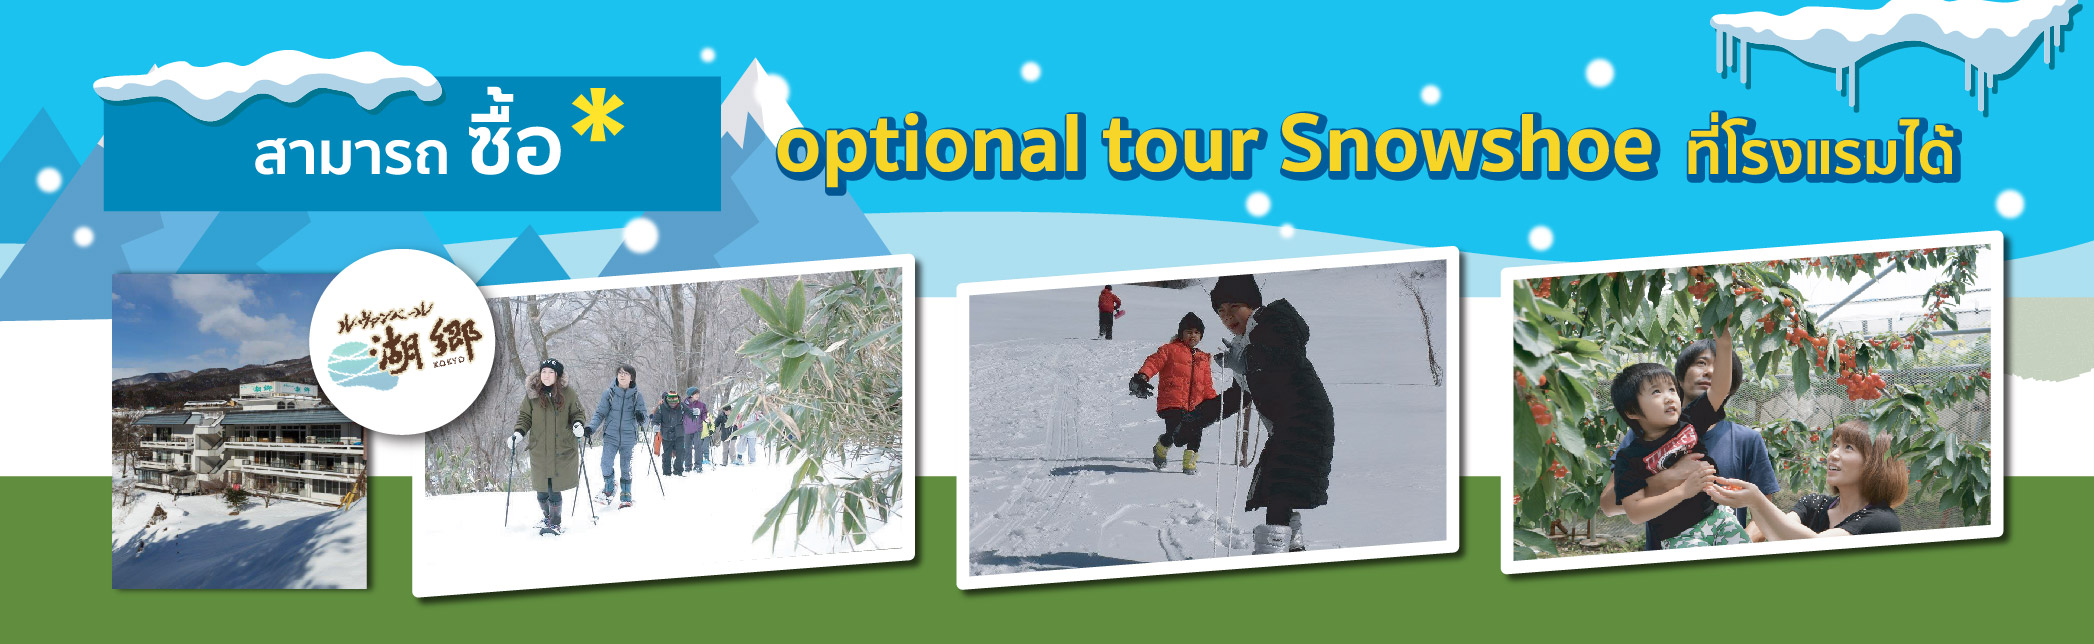 Optional tour Snowshoe, Ryokan Le Vent Vert Kokyo, minakami